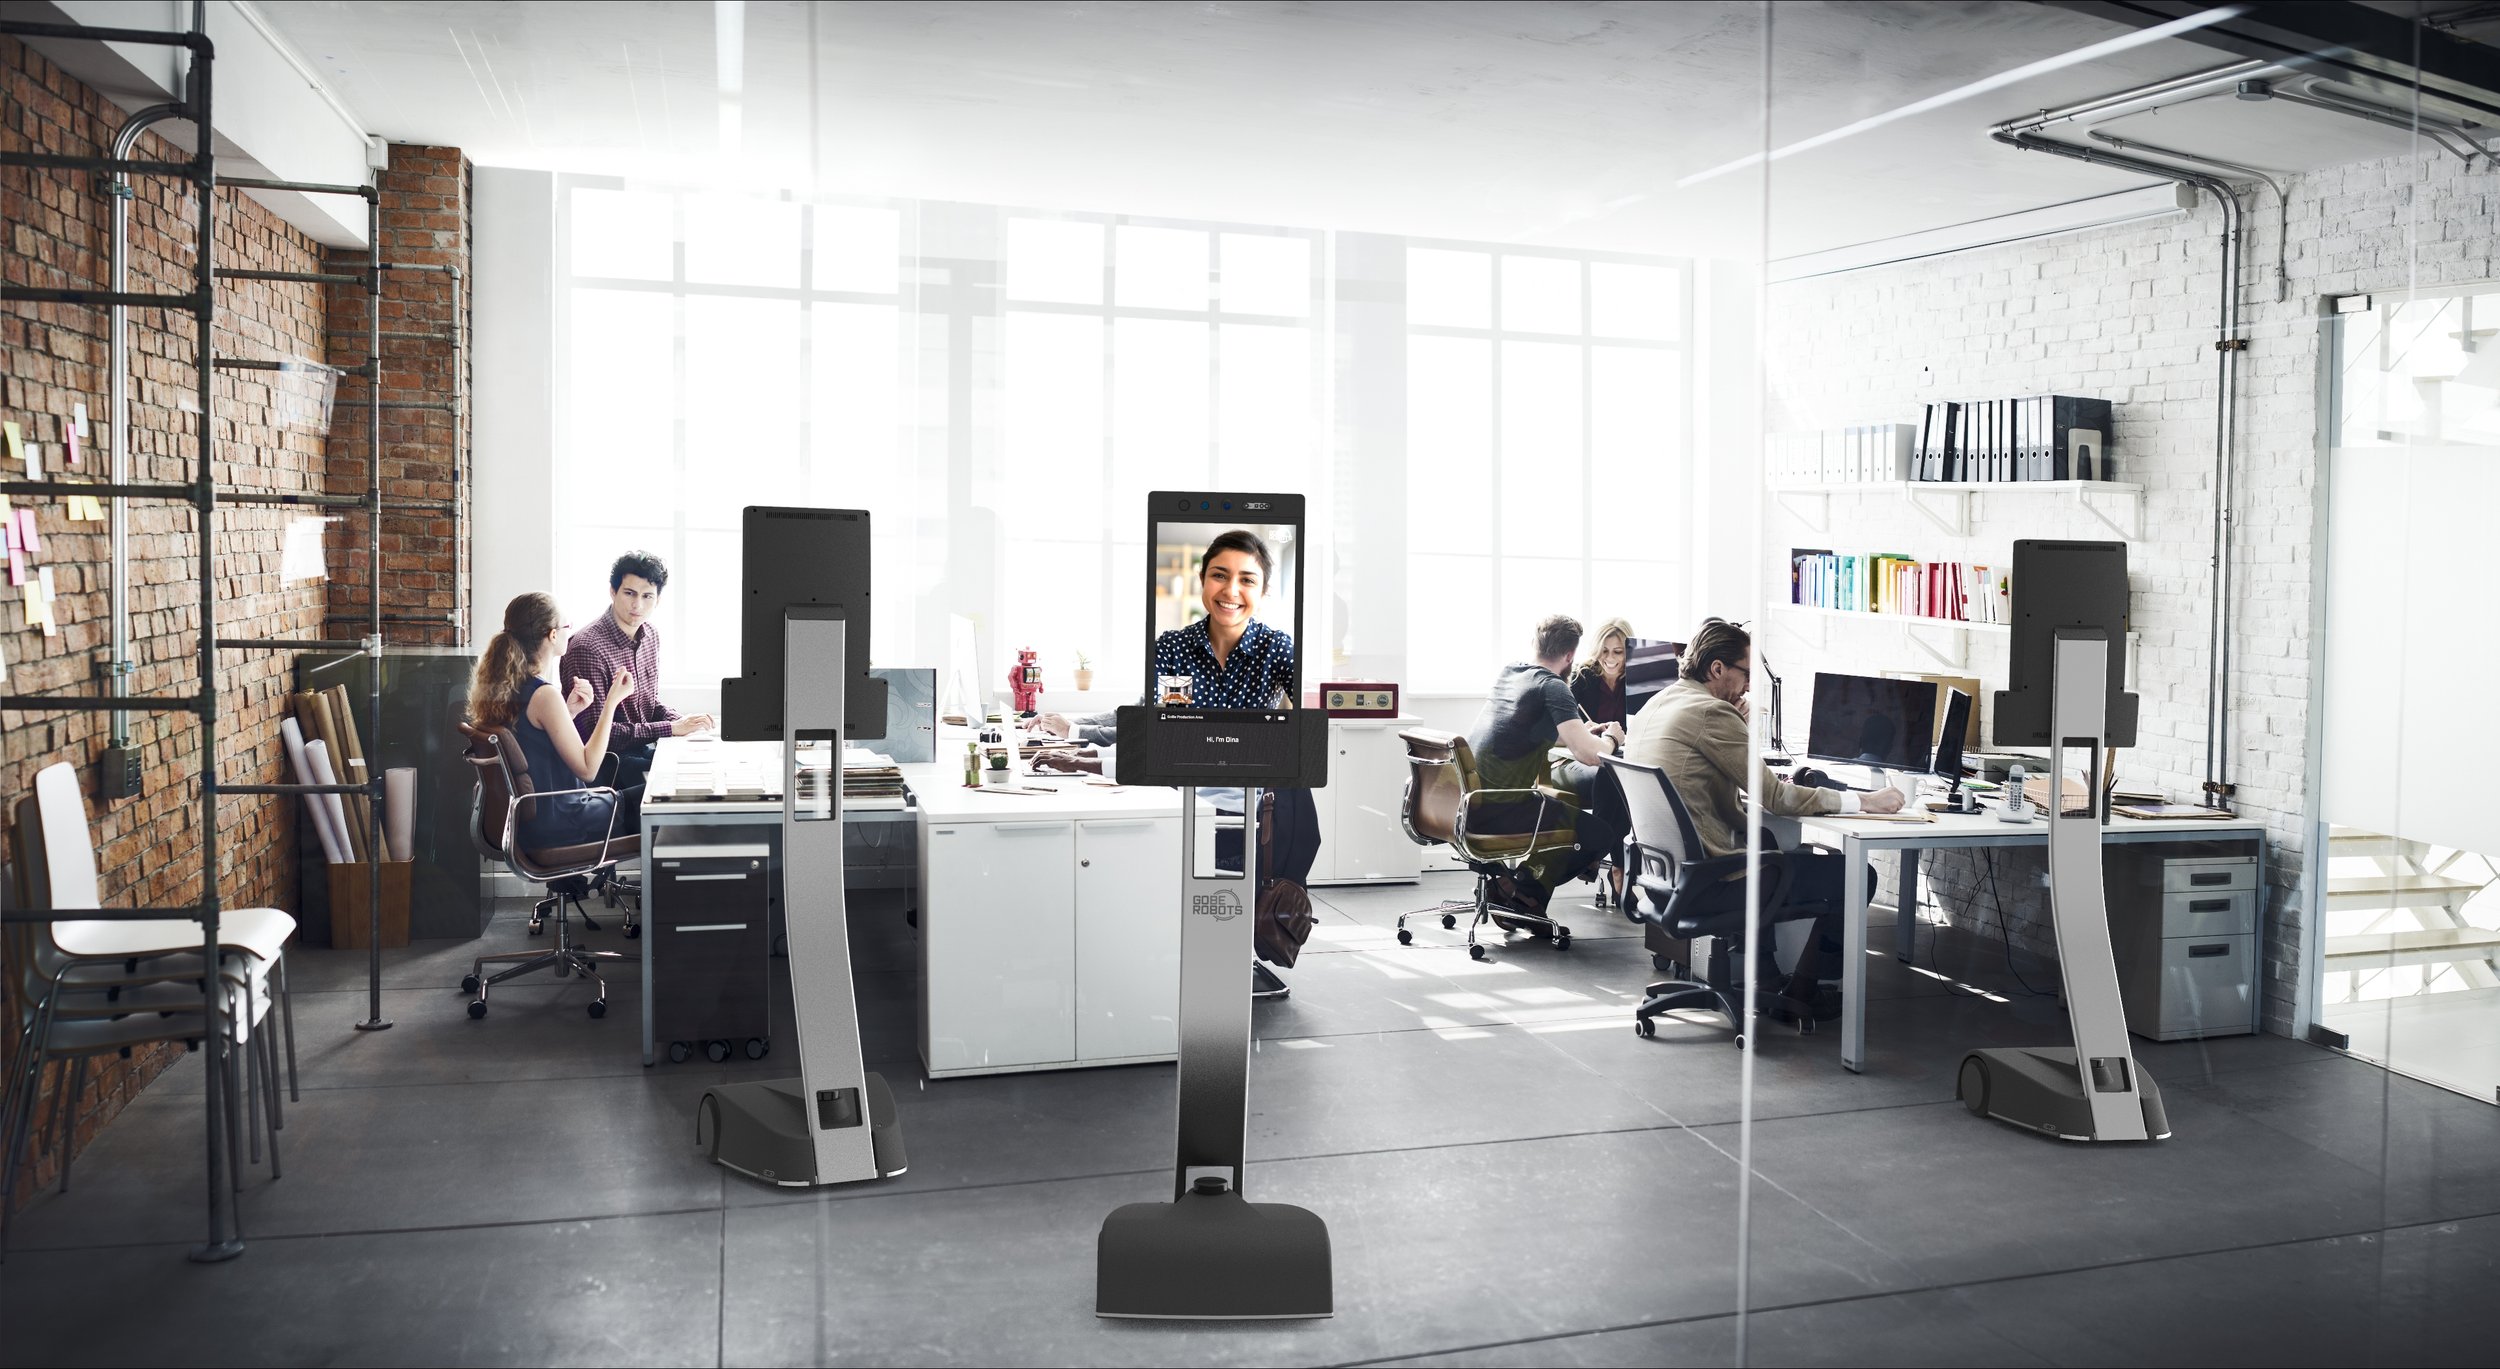 Gobe Robot in an Office Enviroment